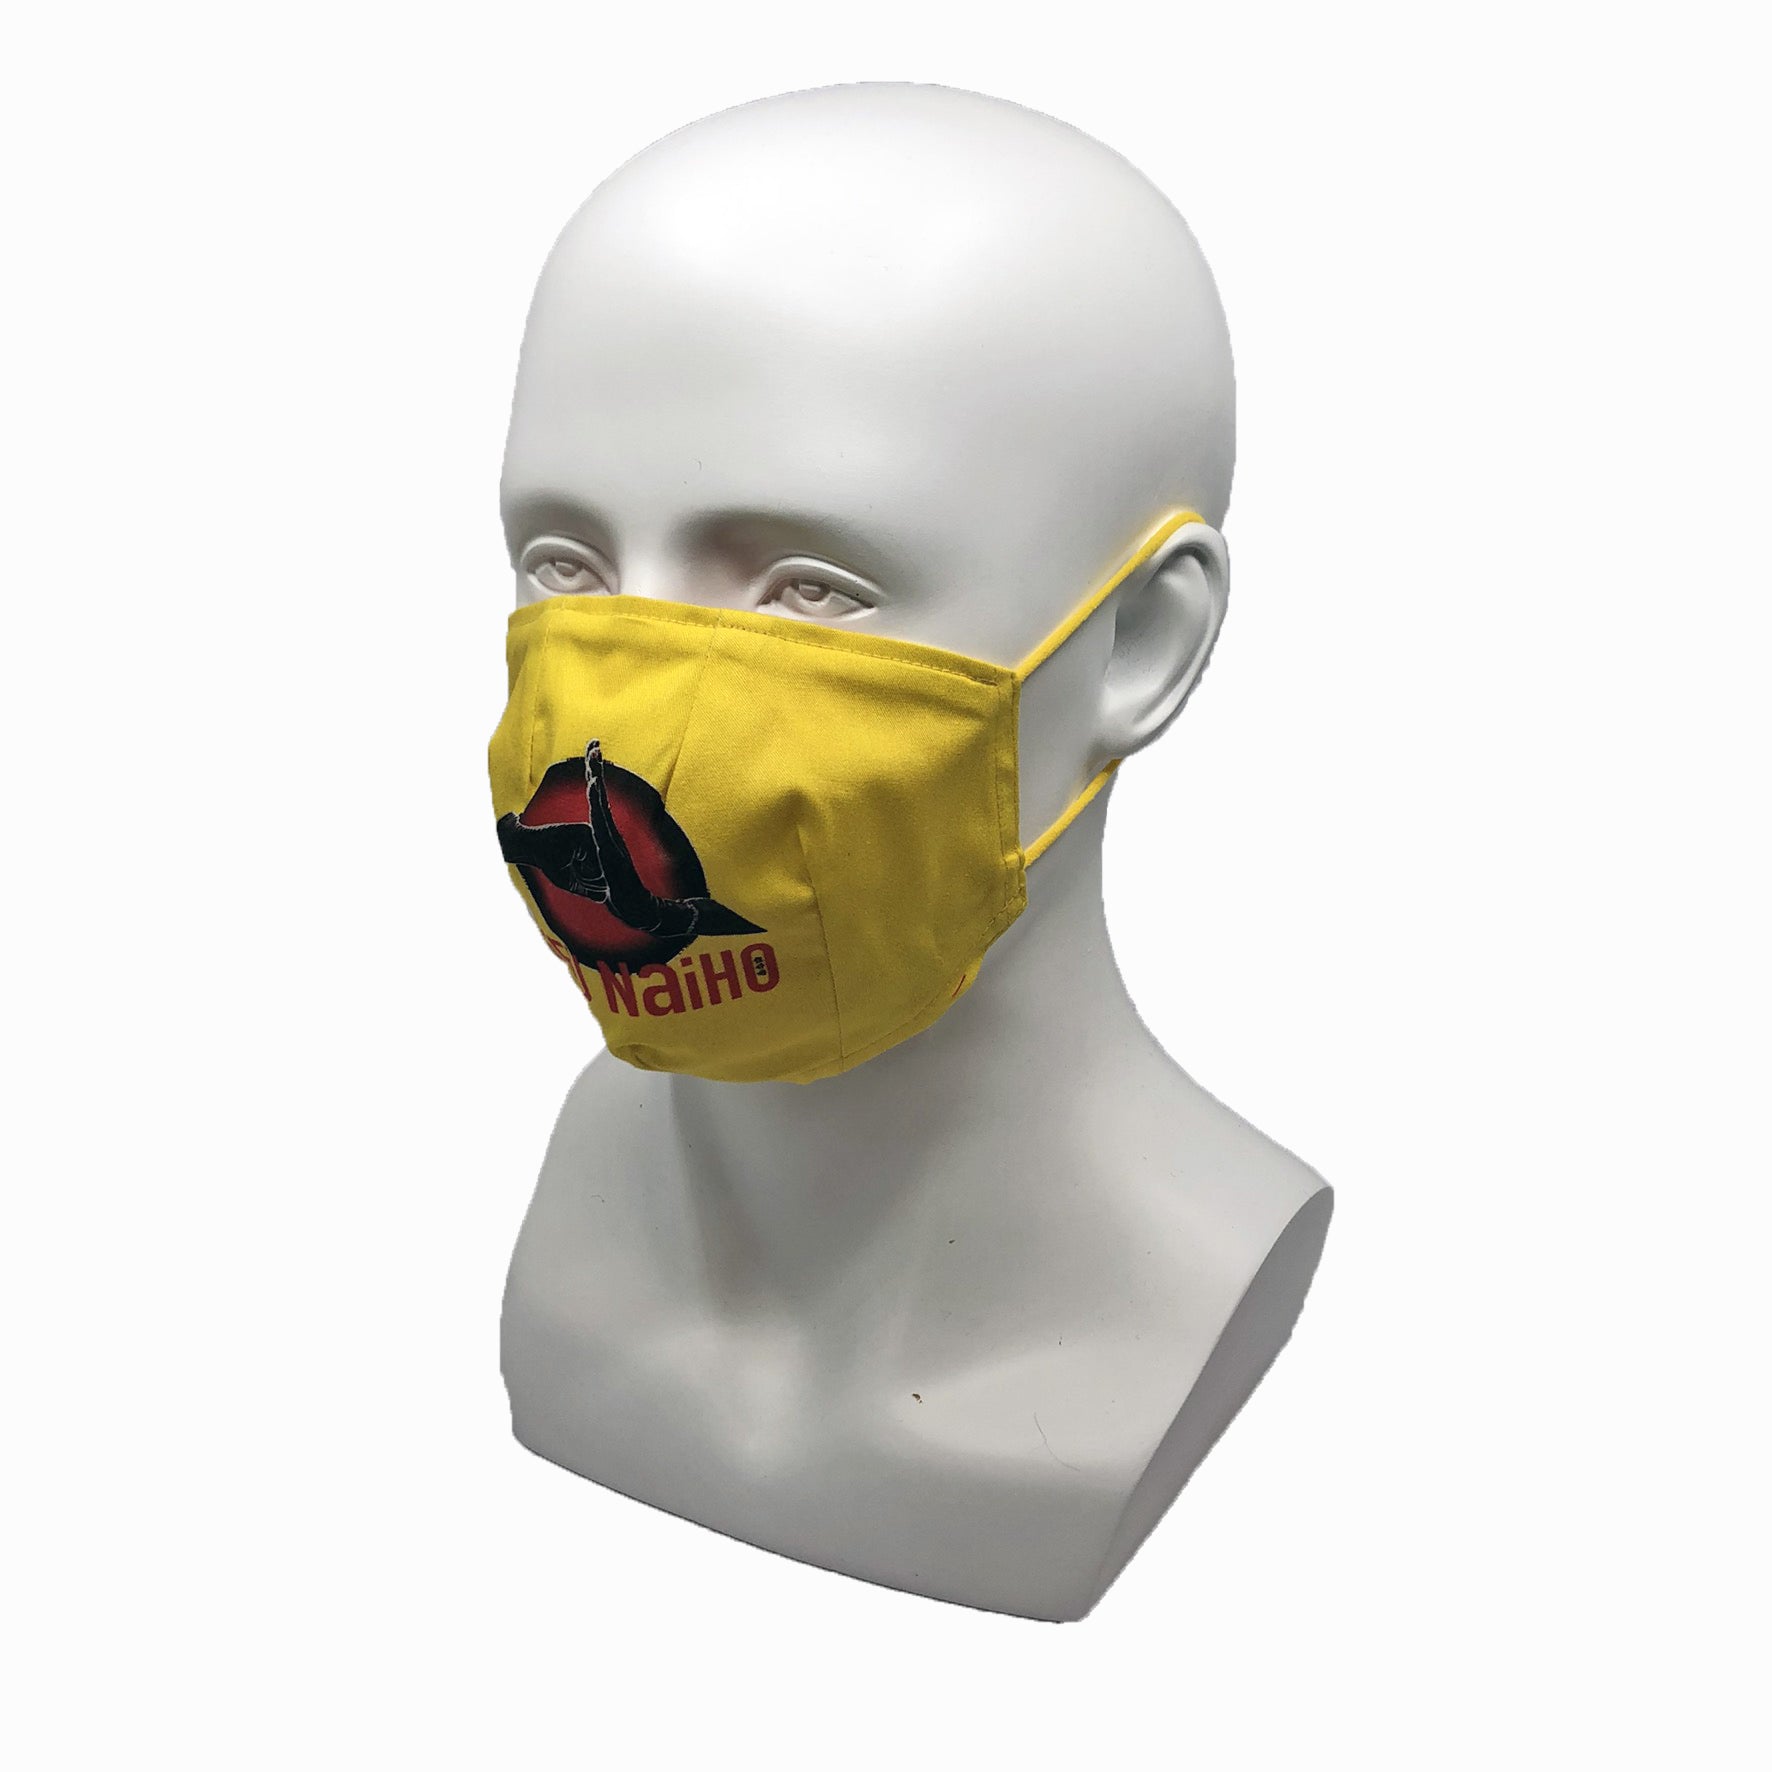 Sifu Nai Ho Bandit Fabric Mask